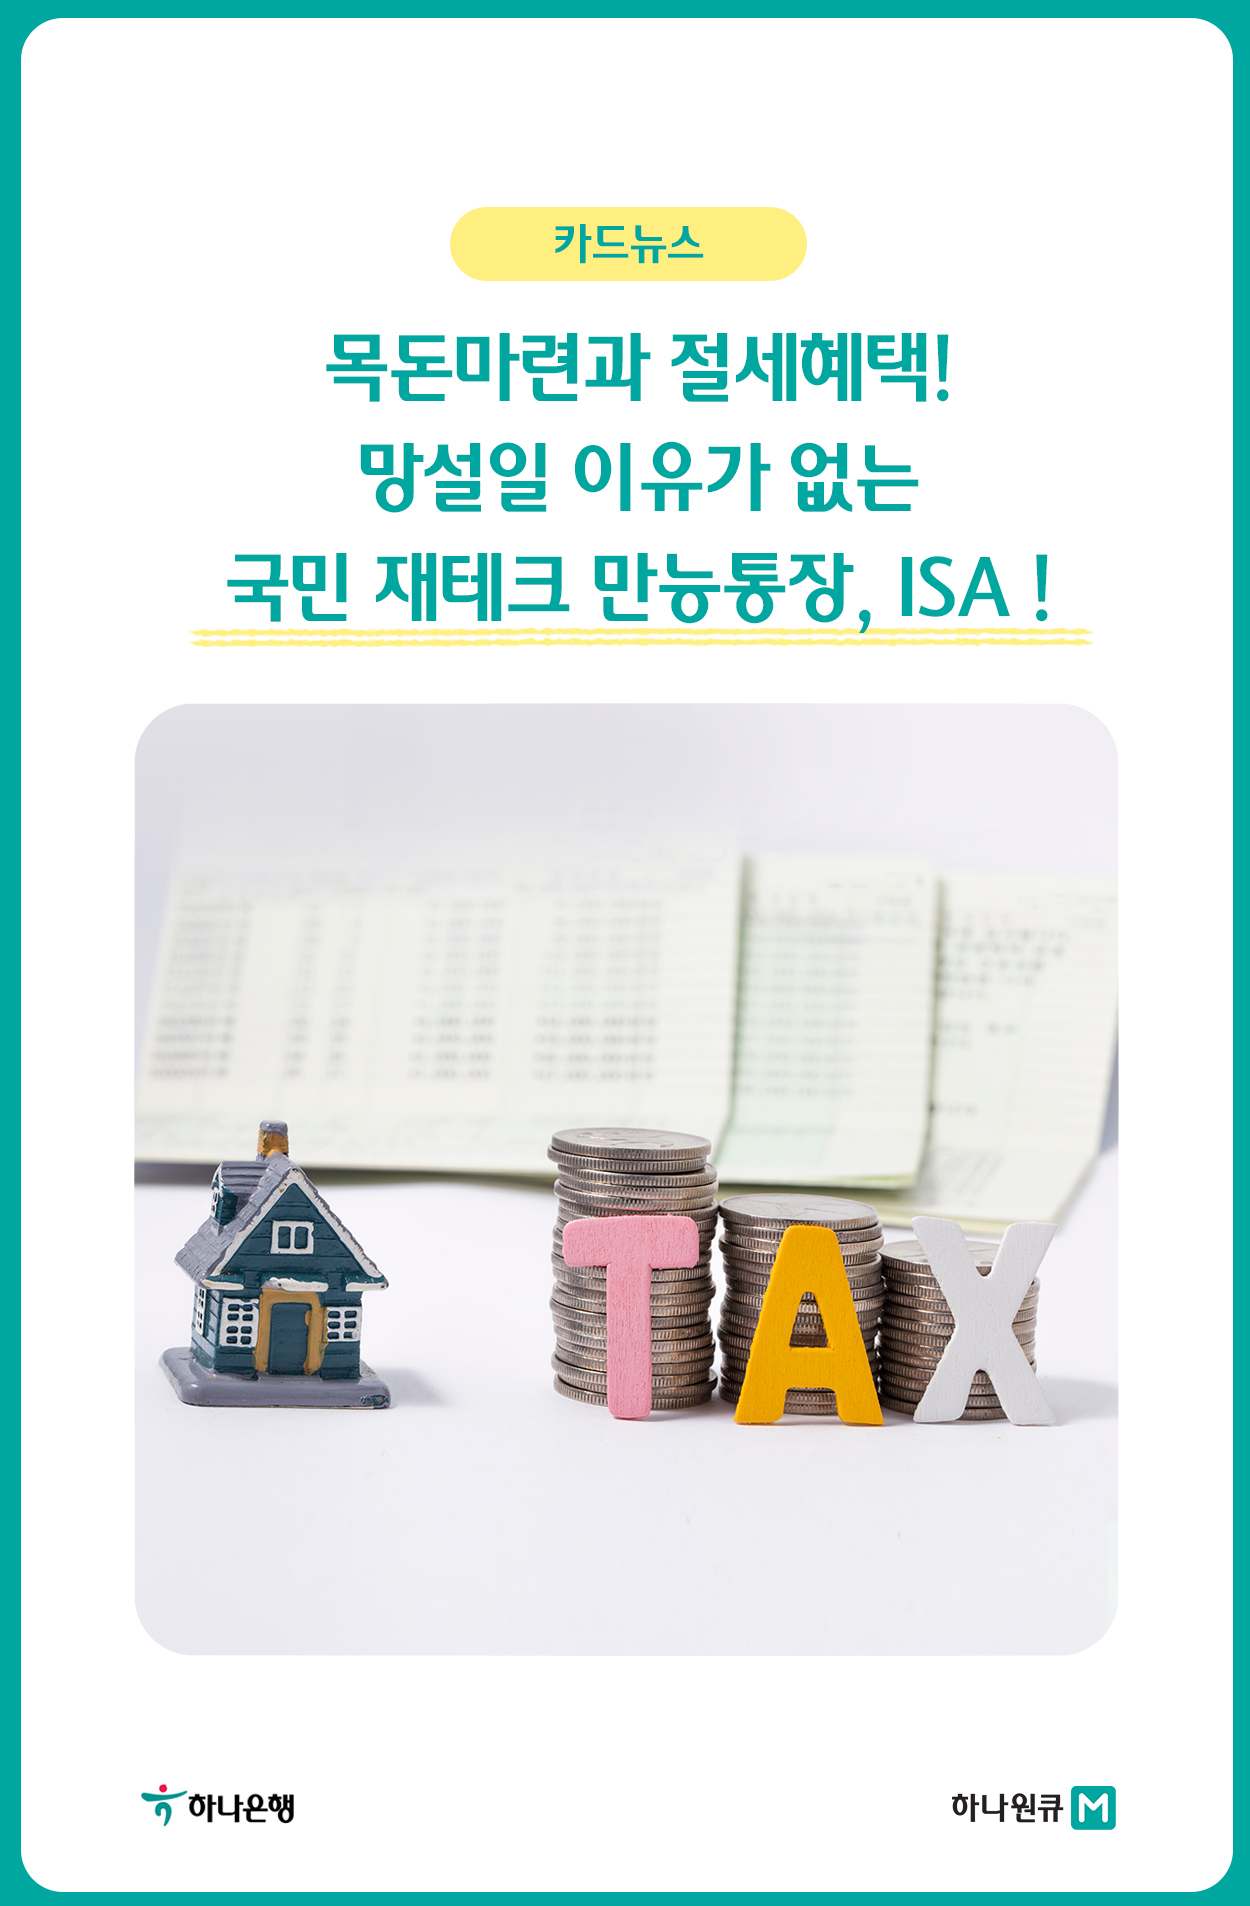 국민 재테크 만능통장, ISA!